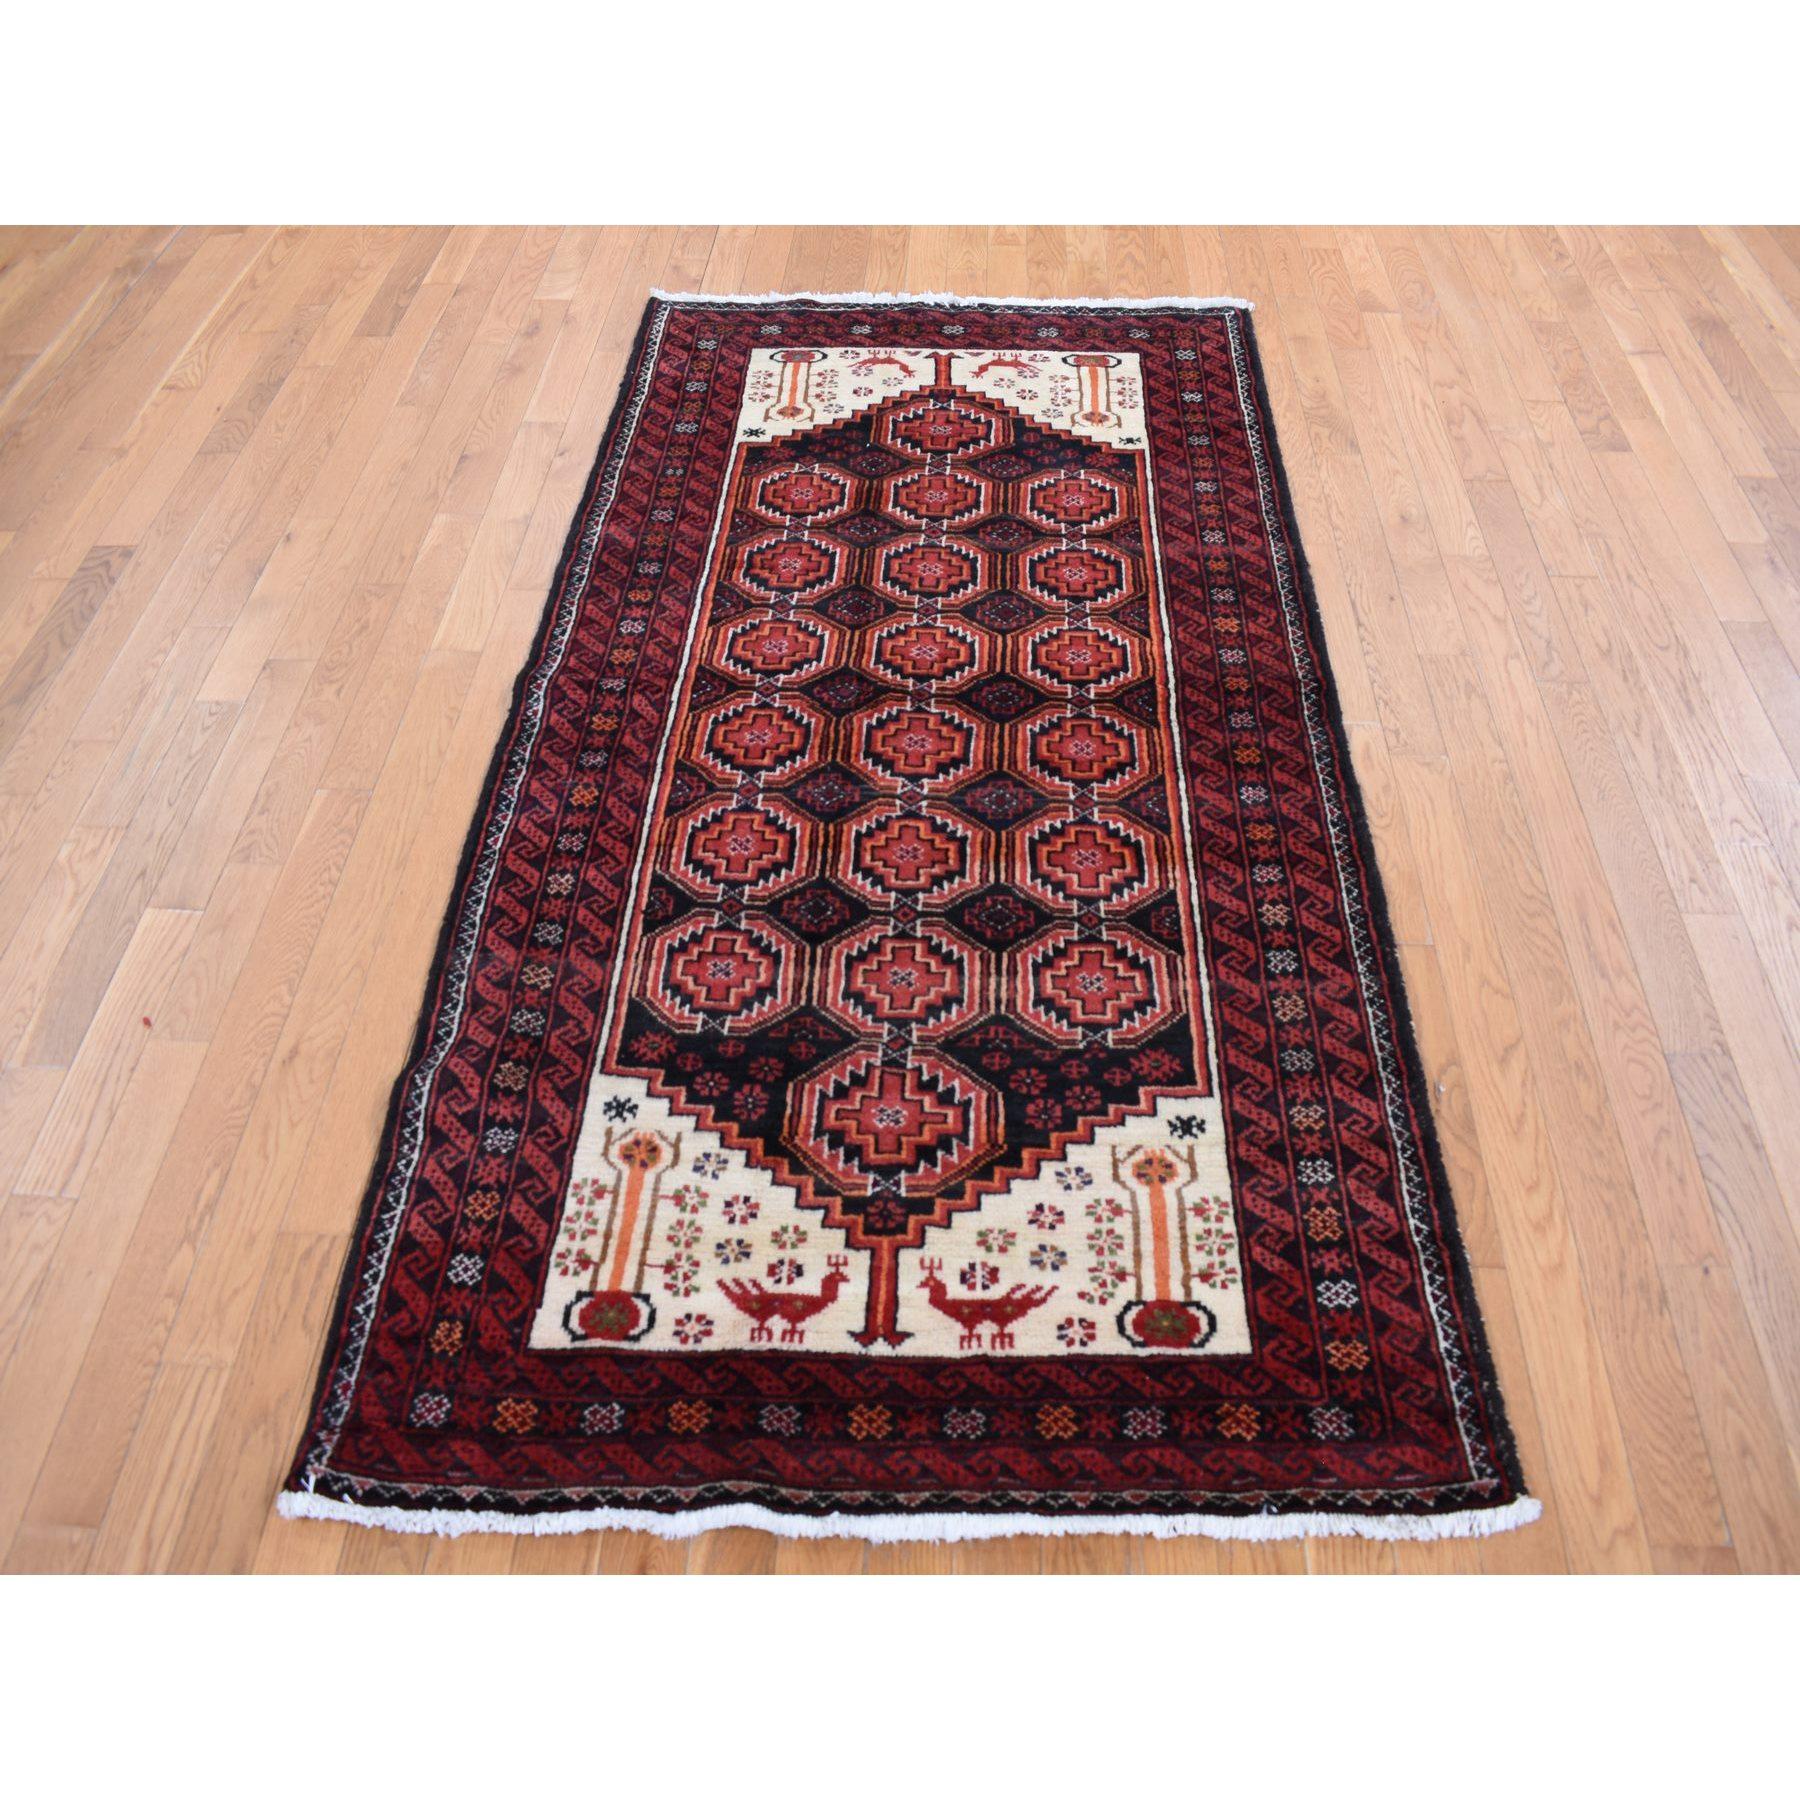 Prismatisch roter persischer, handgeknüpfter Vintage-Teppich aus reiner Wolle, rein, sauber und ohne Verschleiß (Mittelalterlich) im Angebot